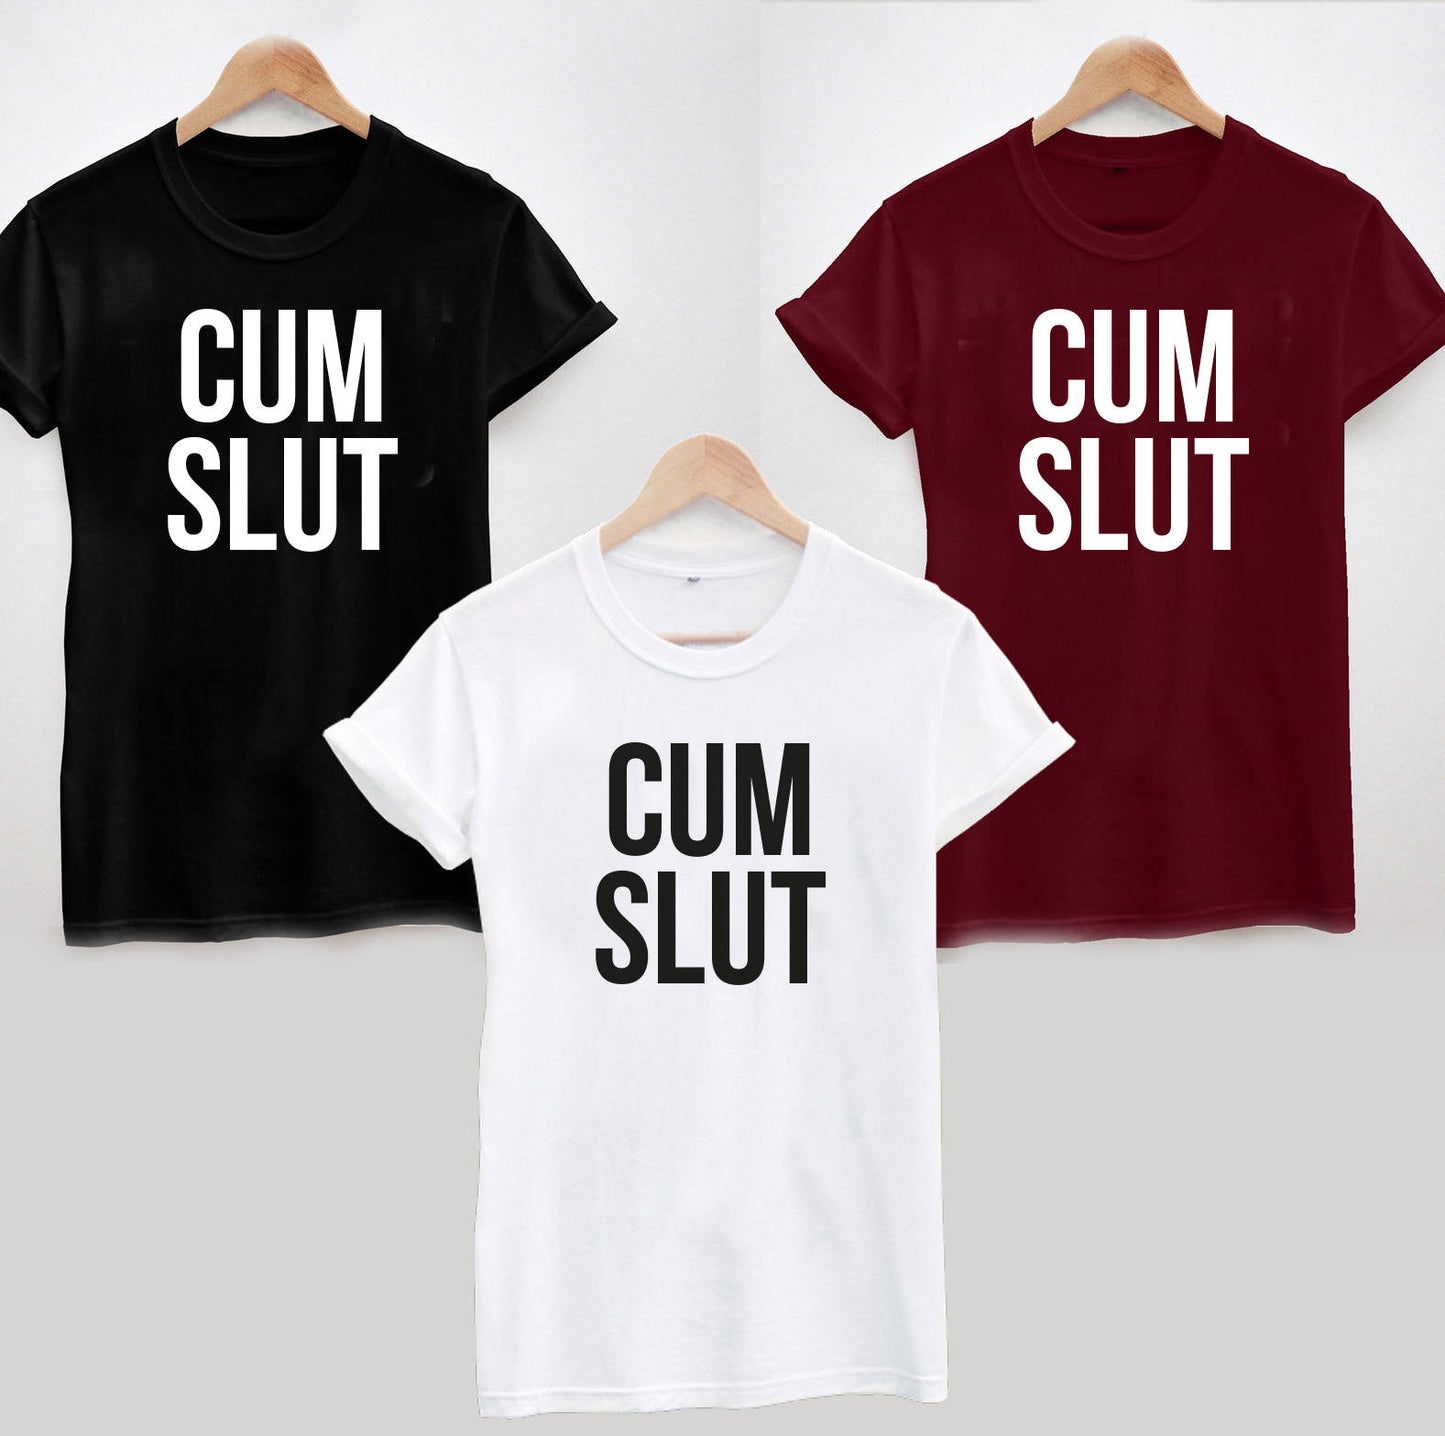 Cum Slut T-Shirt, Funny Rude Ladies or Unisex Tee Top, Offensive Joke Birthday Hen Party